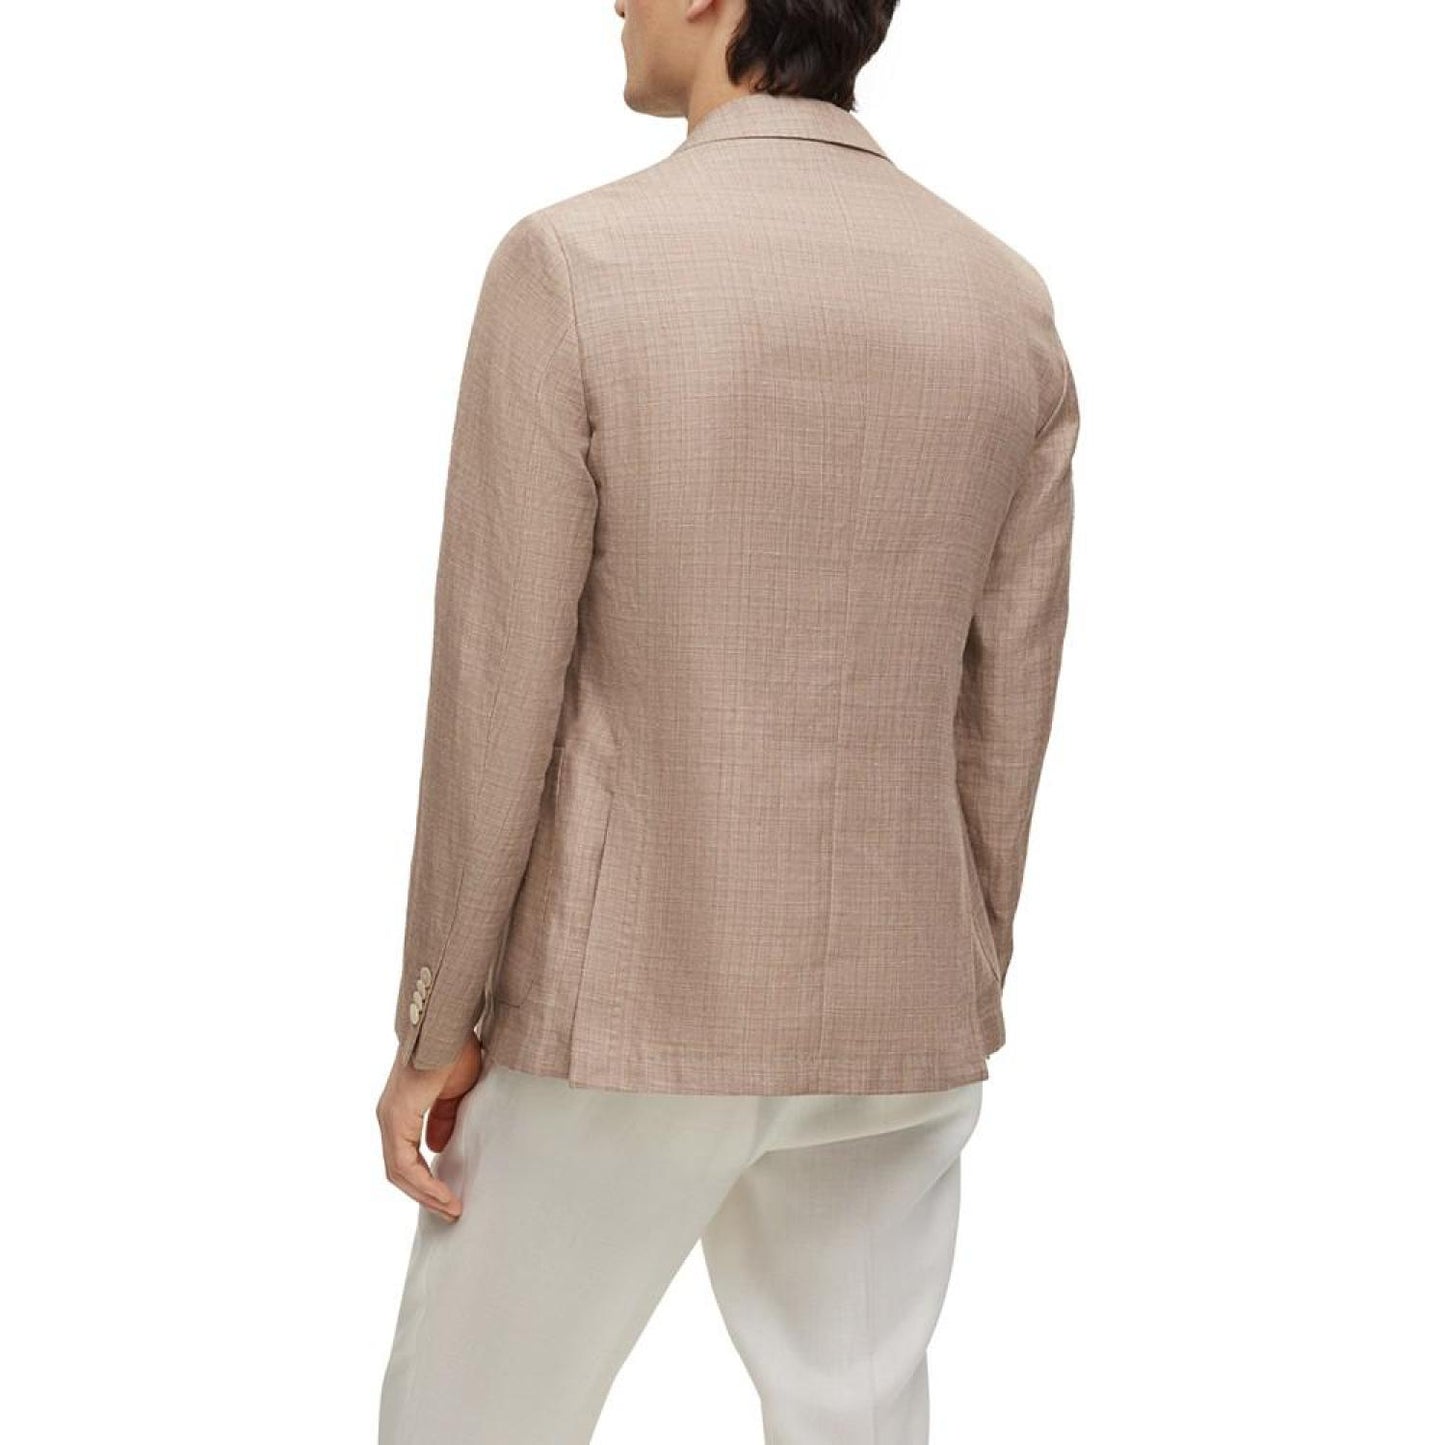 Men's Patterned Linen Slim-Fit Jacket